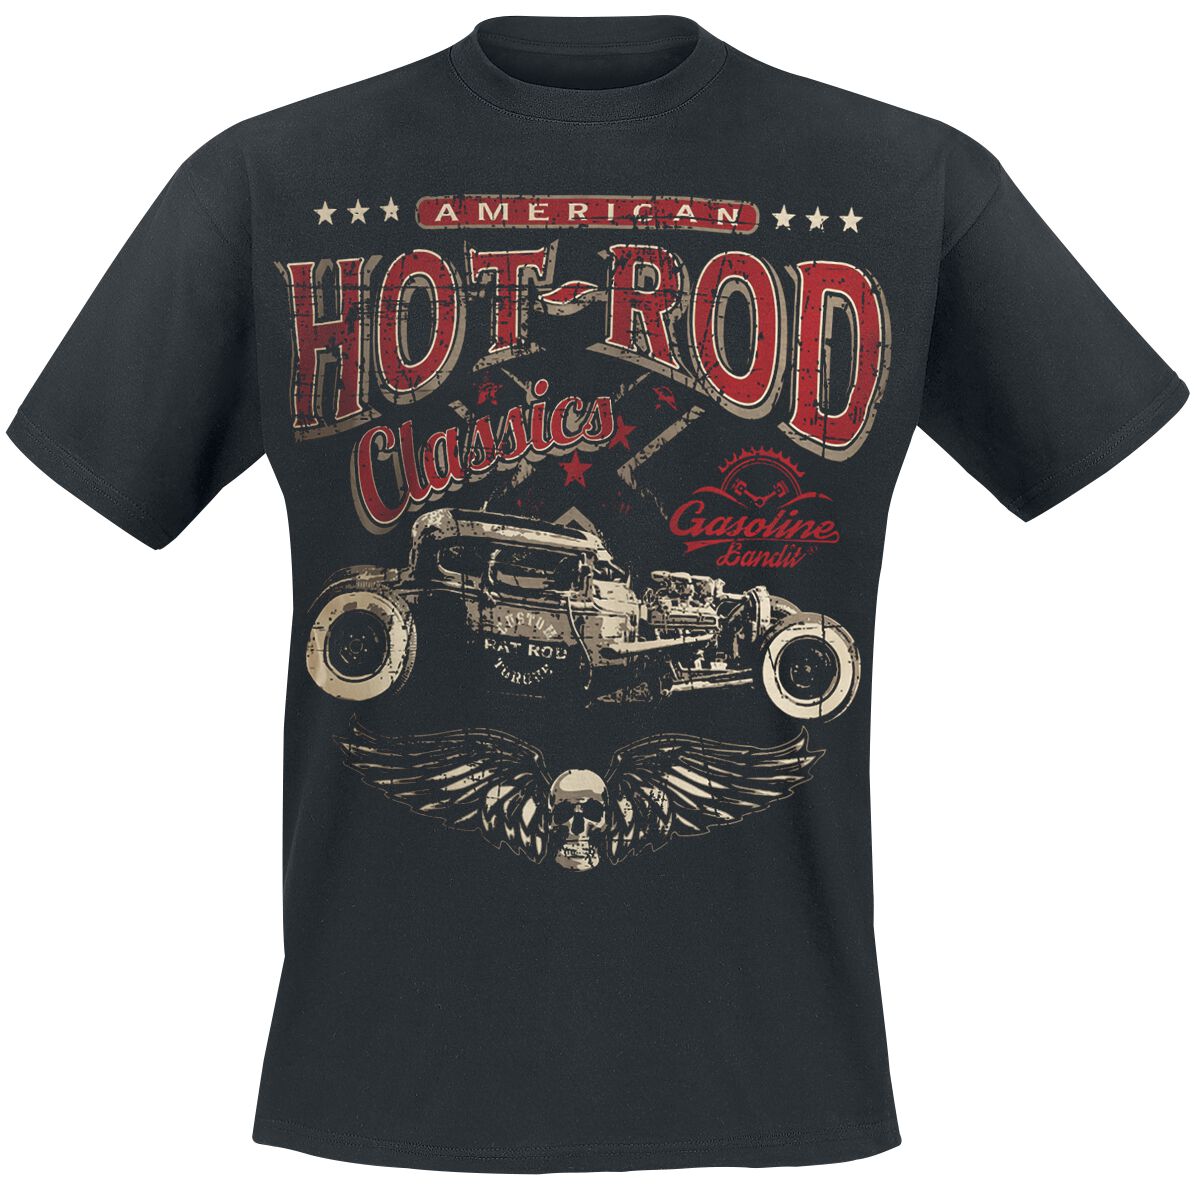 Gasoline Bandit - Rockabilly T-Shirt - Hot Rod Classics - S bis 3XL - für Männer - Größe L - schwarz